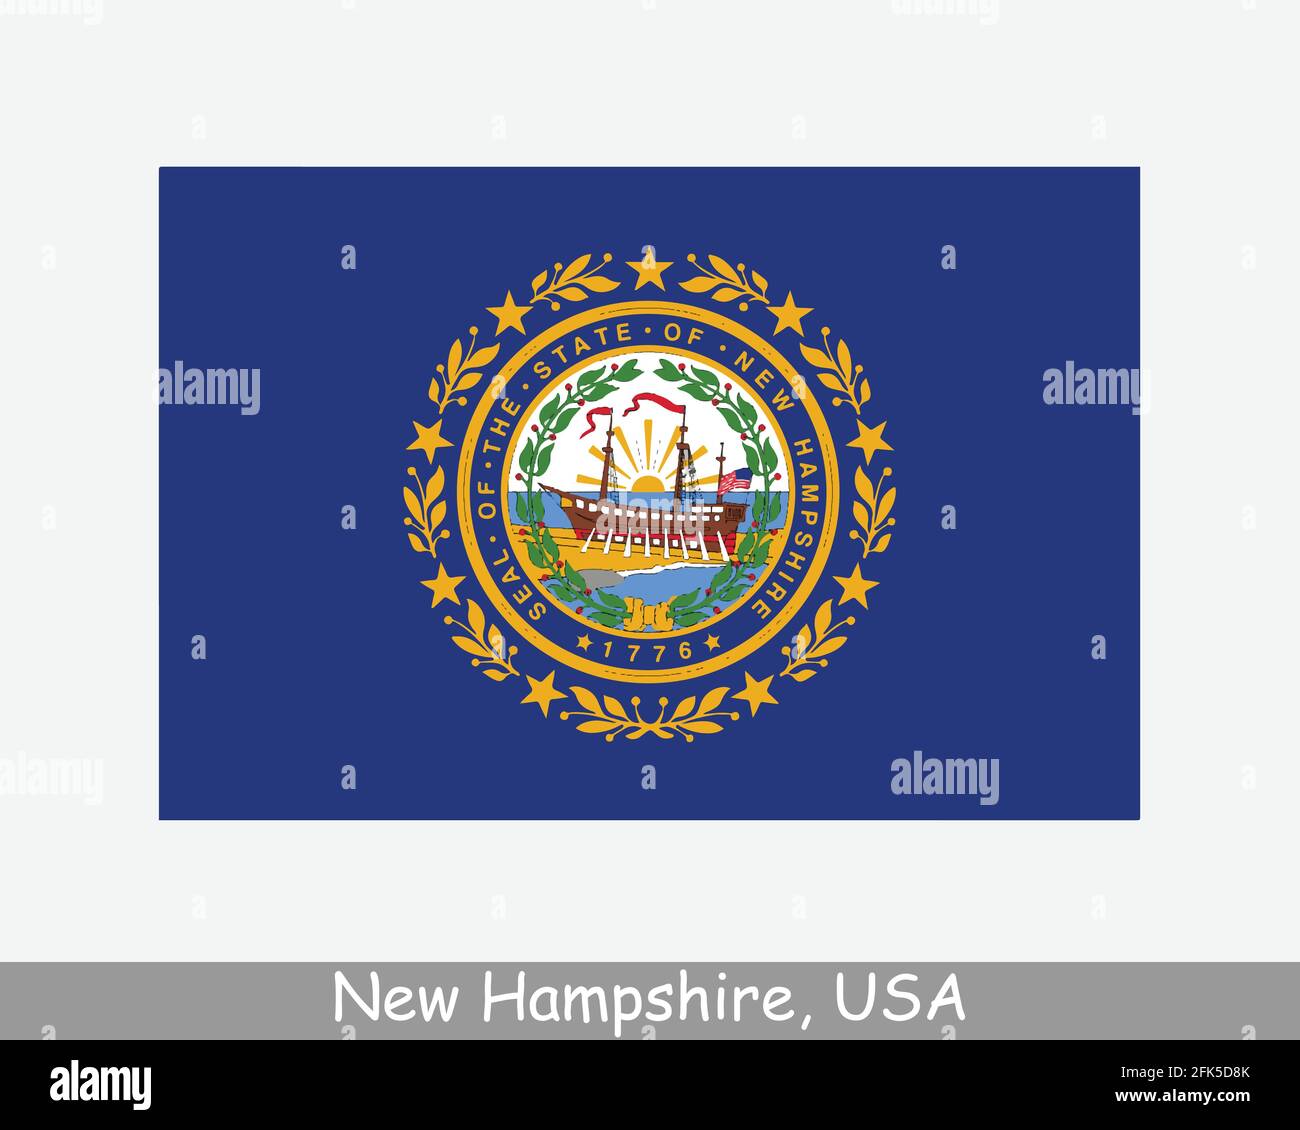 New Hampshire USA Staatsflagge. Flagge von NH, USA isoliert auf weißem Hintergrund. Vereinigte Staaten, Amerika, American, Vereinigte Staaten von Amerika, US-Bundesstaat. Vect Stock Vektor